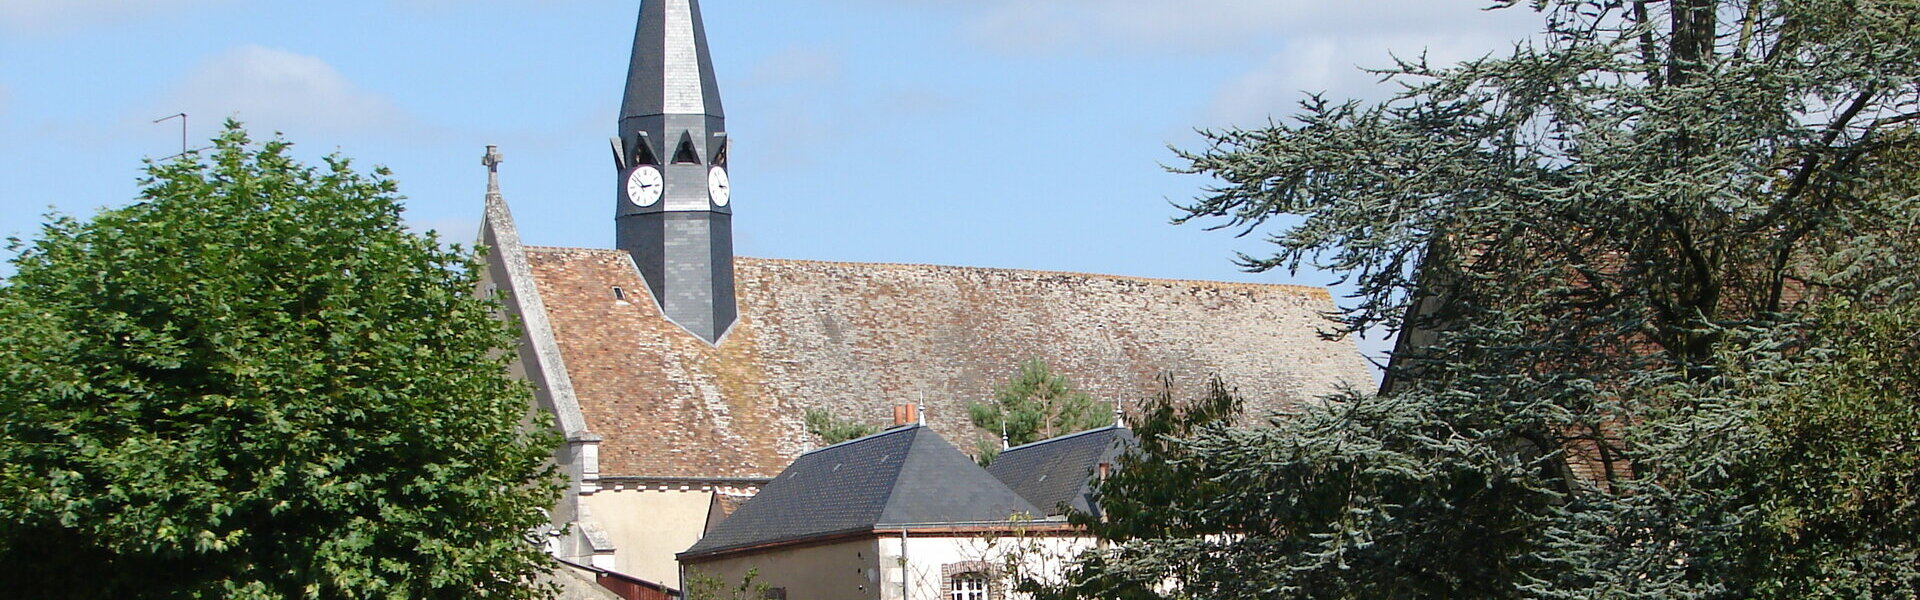 La commune de la Selle-sur-le-Bied dans le Loiret